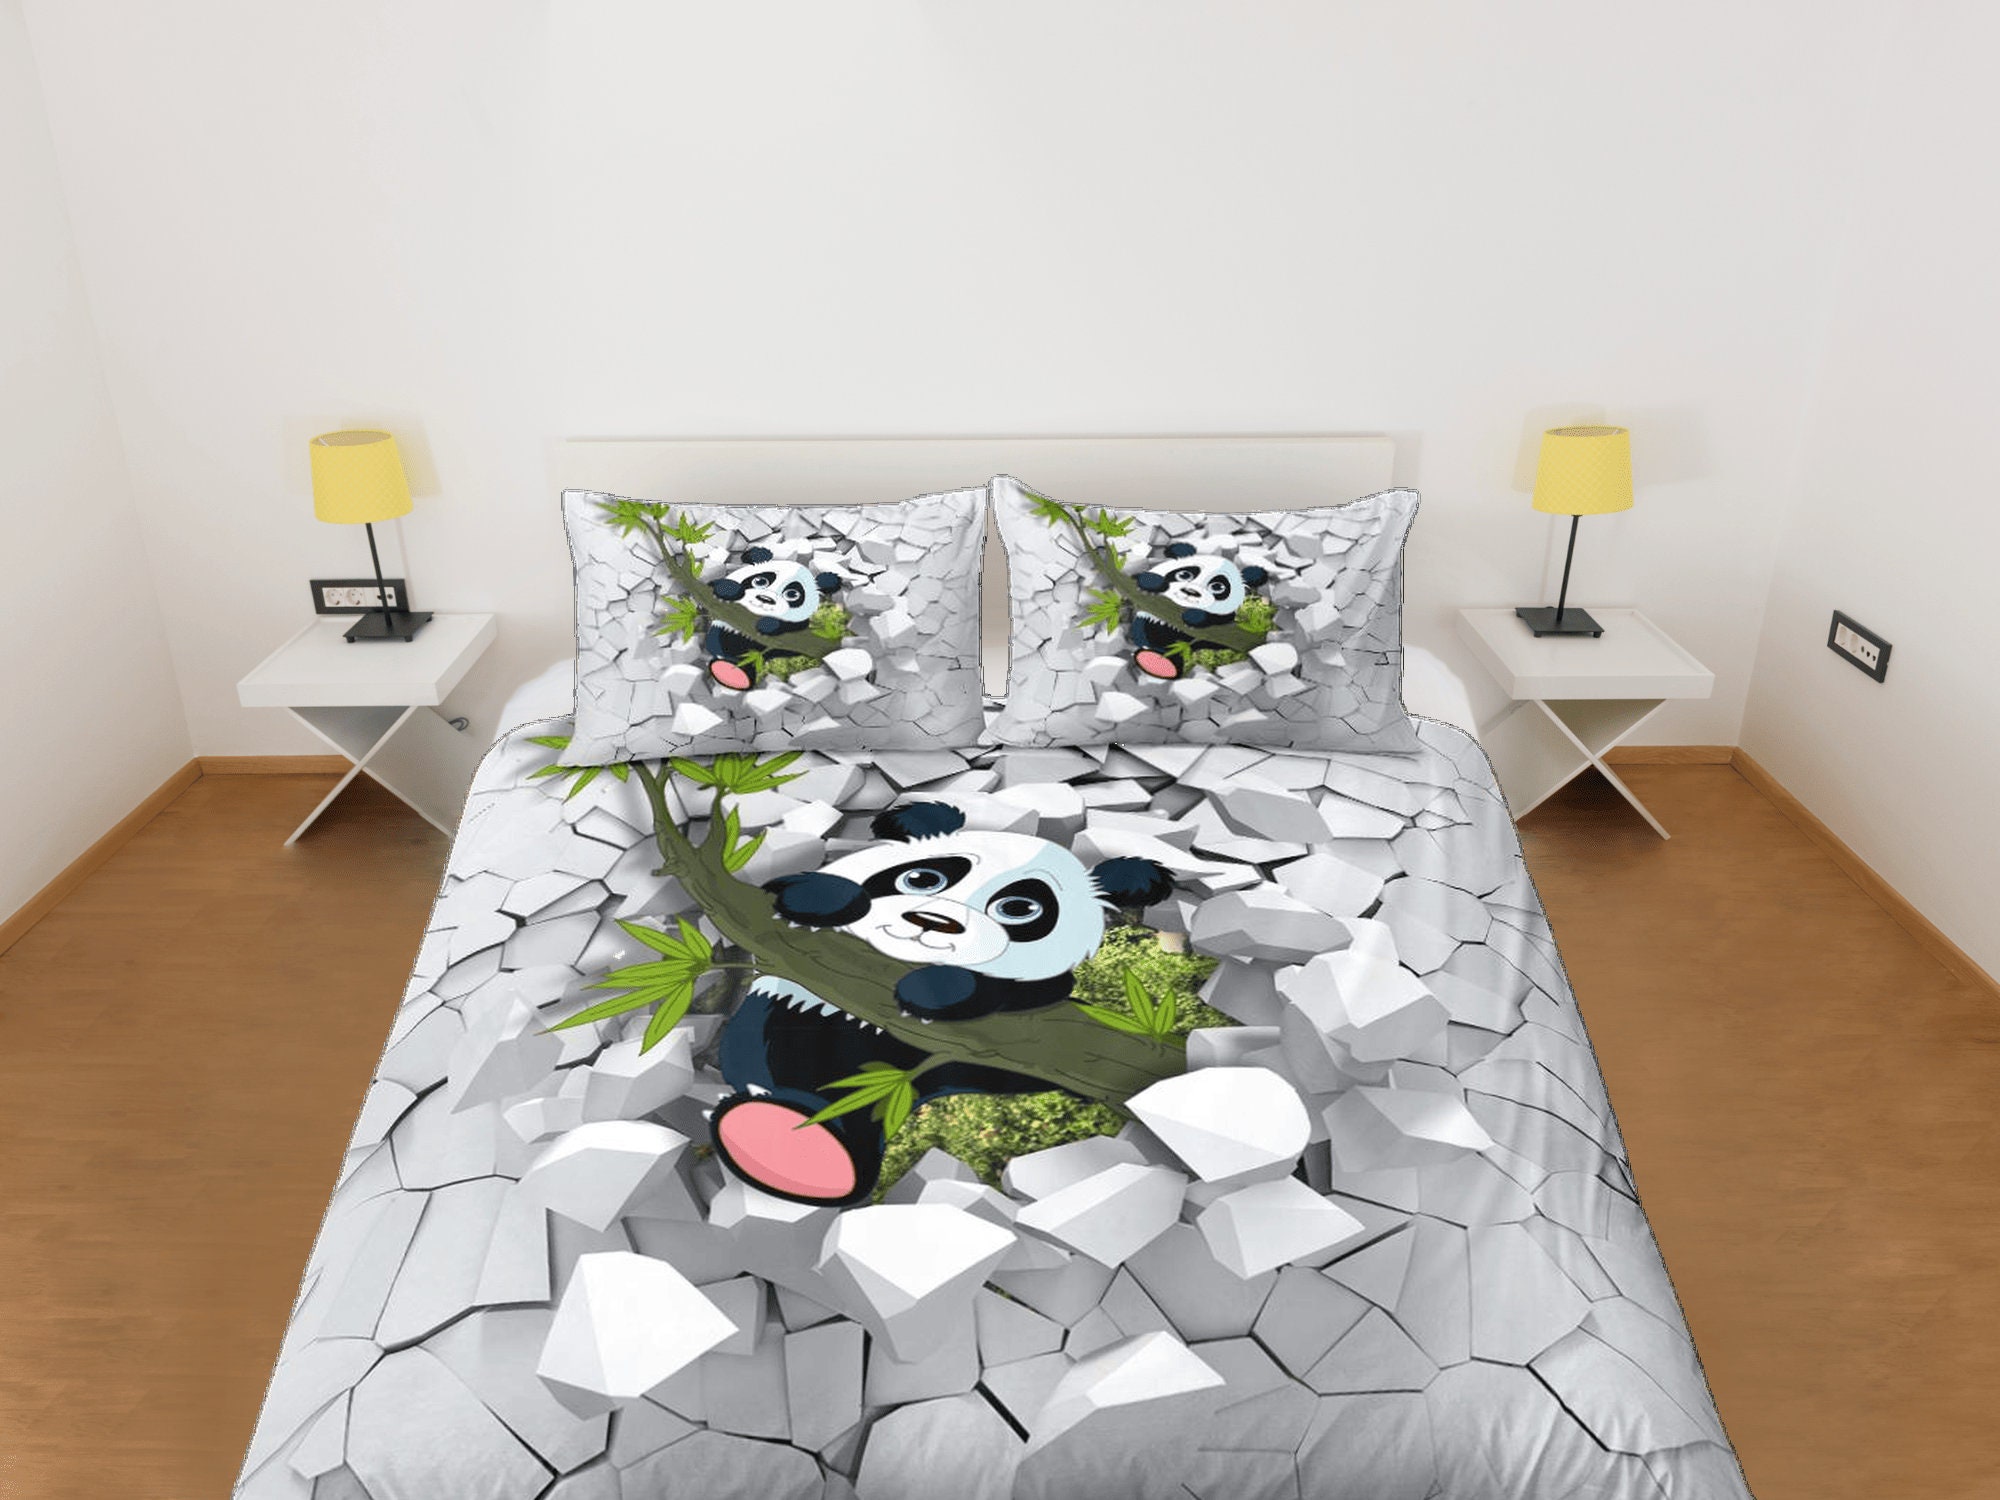 Baby Panda Bedding Set, Animal Bedding Set